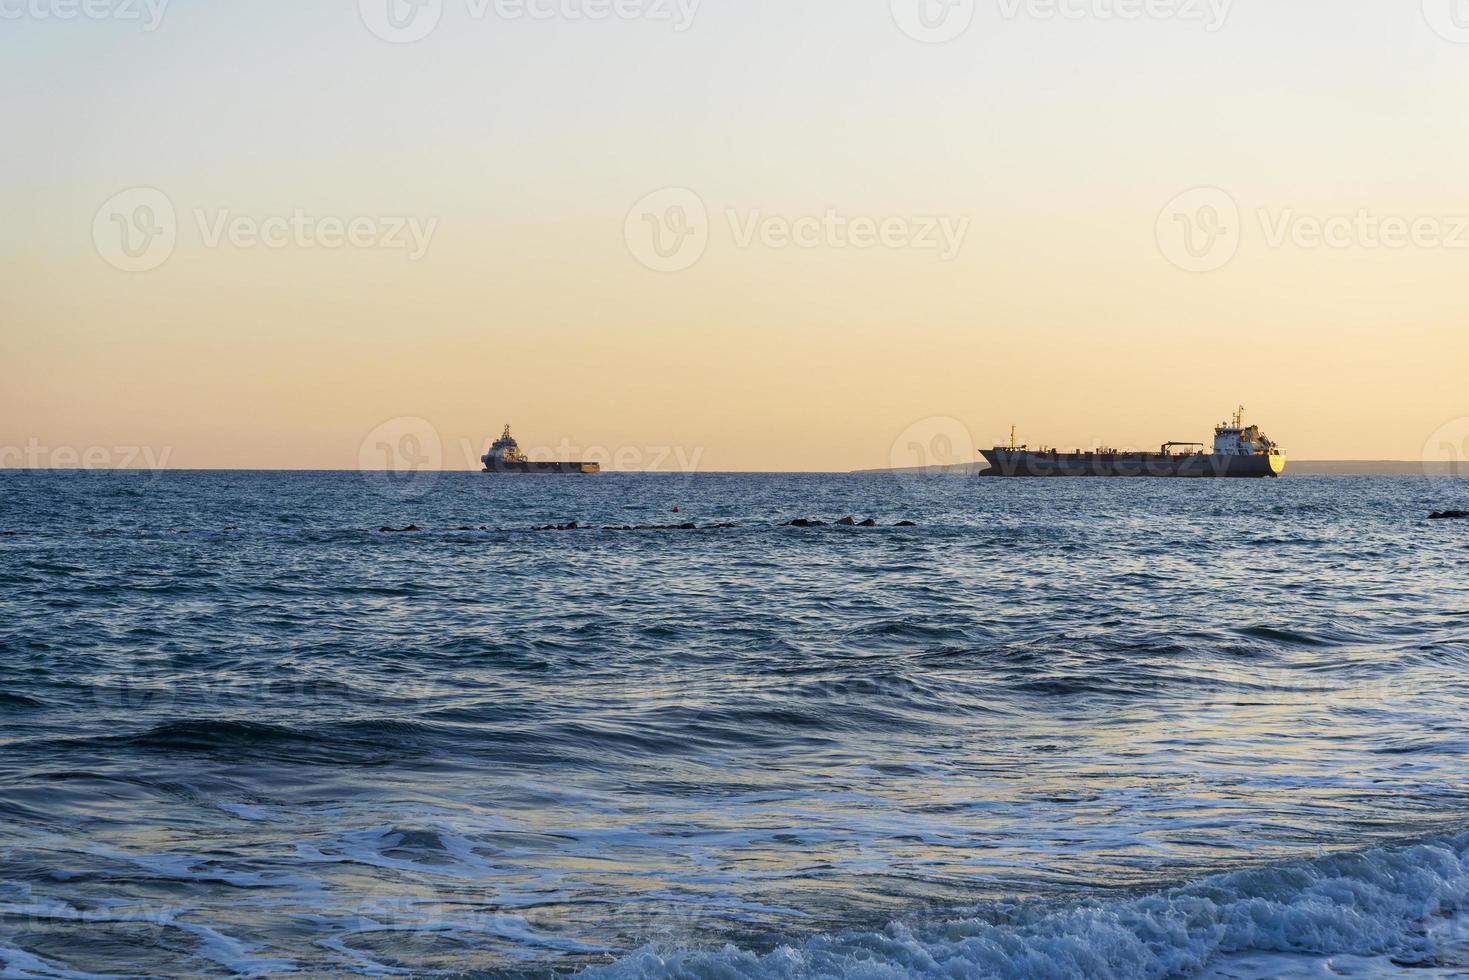 navi da carico all'orizzonte del Mar Mediterraneo. foto